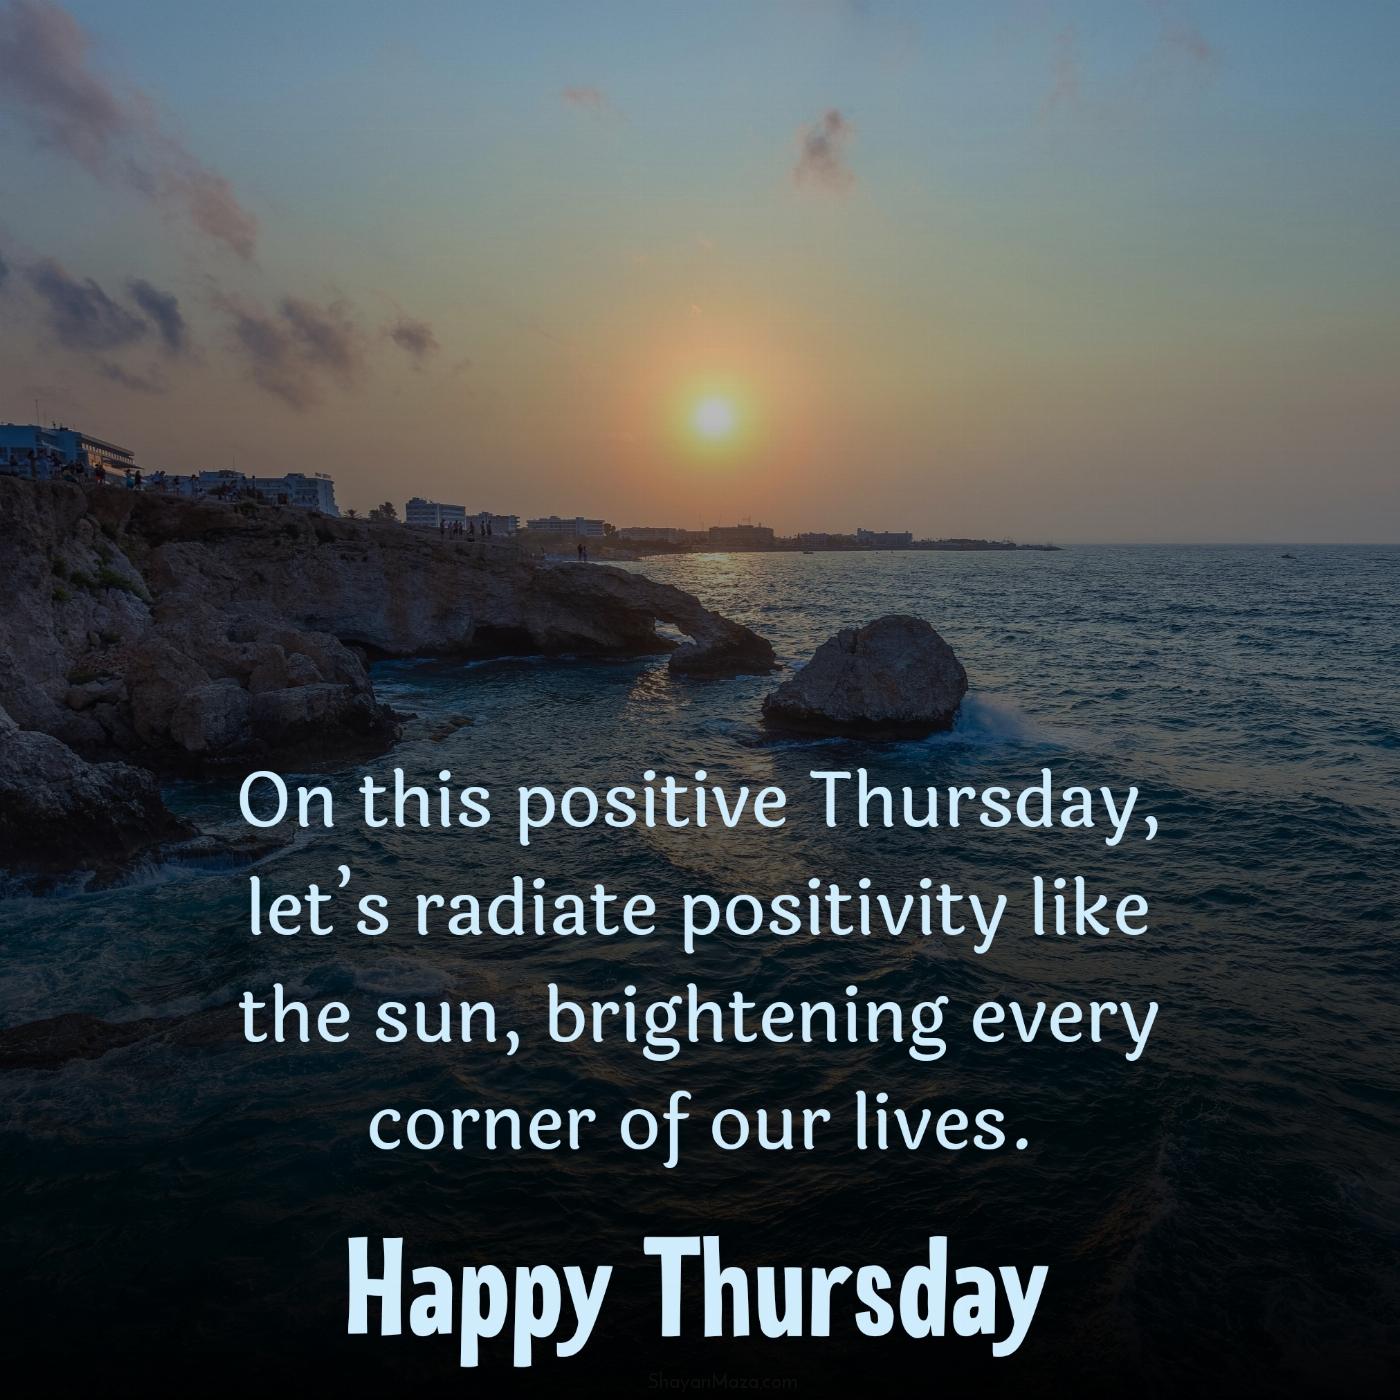 On this positive Thursday lets radiate positivity like the sun